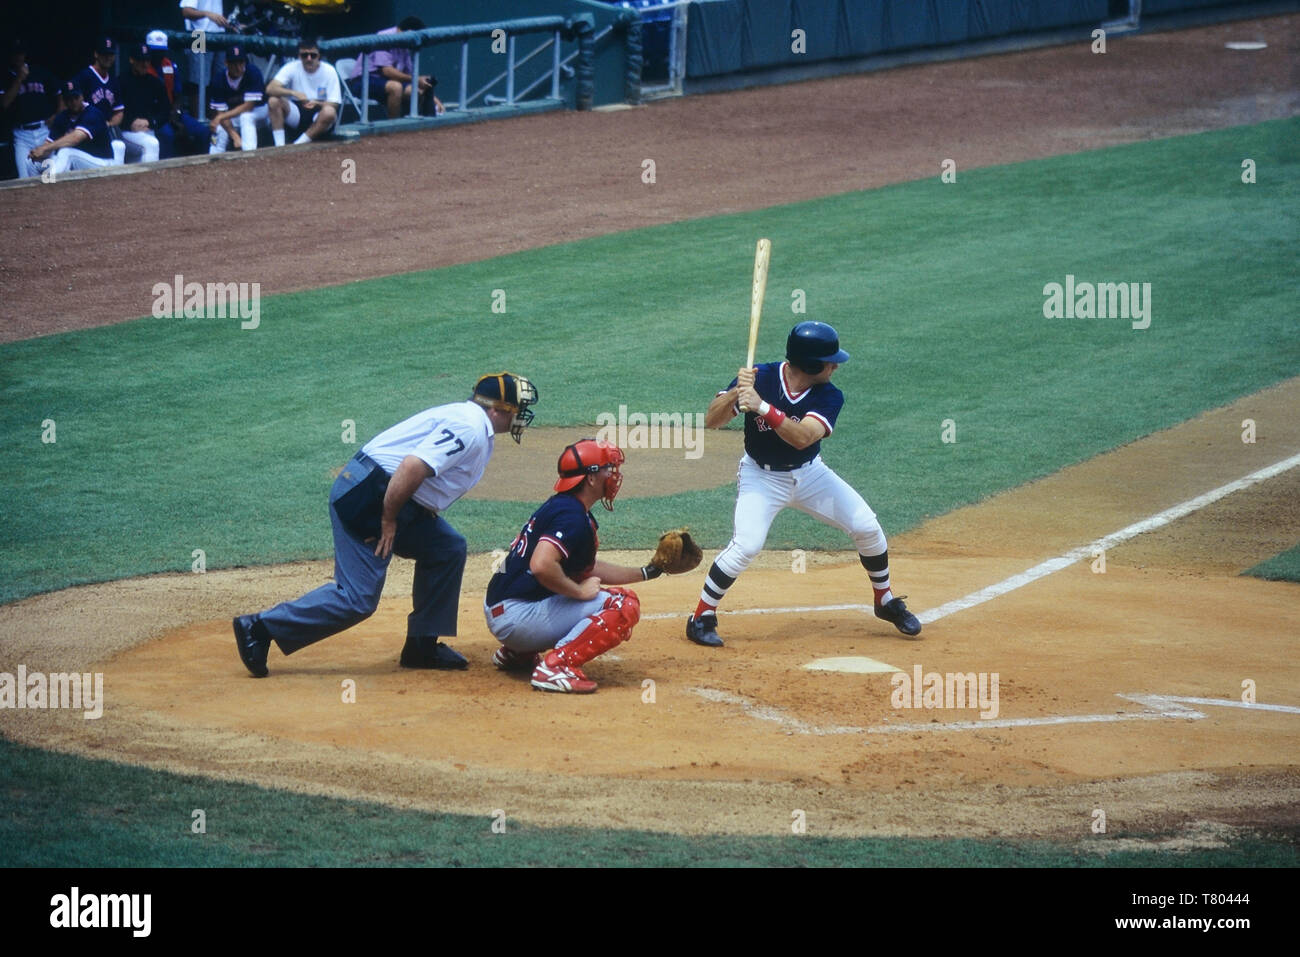 Boston Red Sox V St Louis Cardinals baseball game, Florida, USA Stock Photo